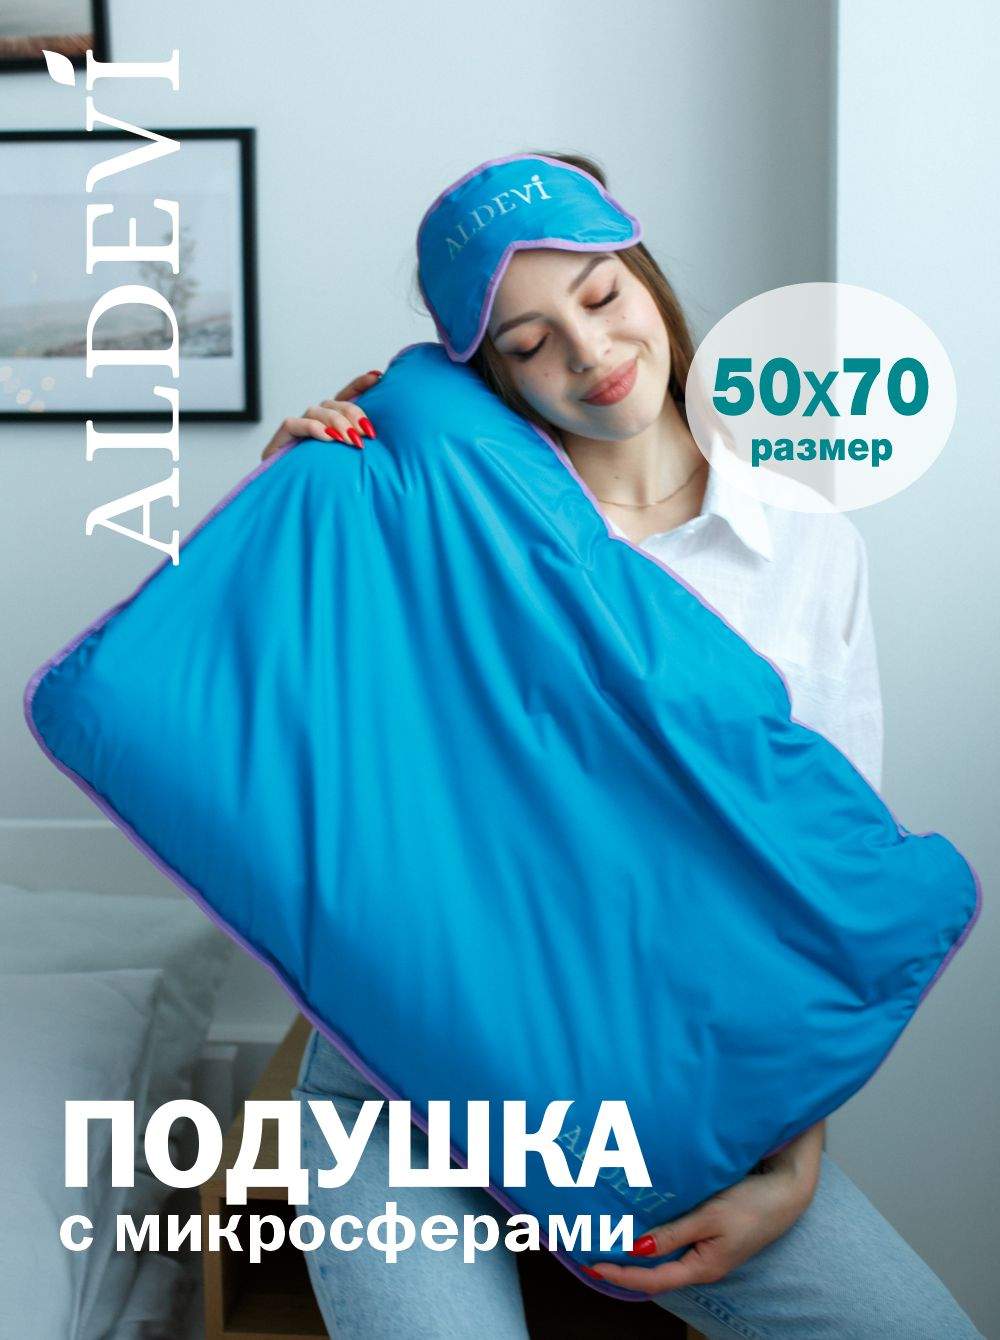 Подушка с микросферами ALDEVI, 50х70 - купить в ALDEVI, цена на Мегамаркет